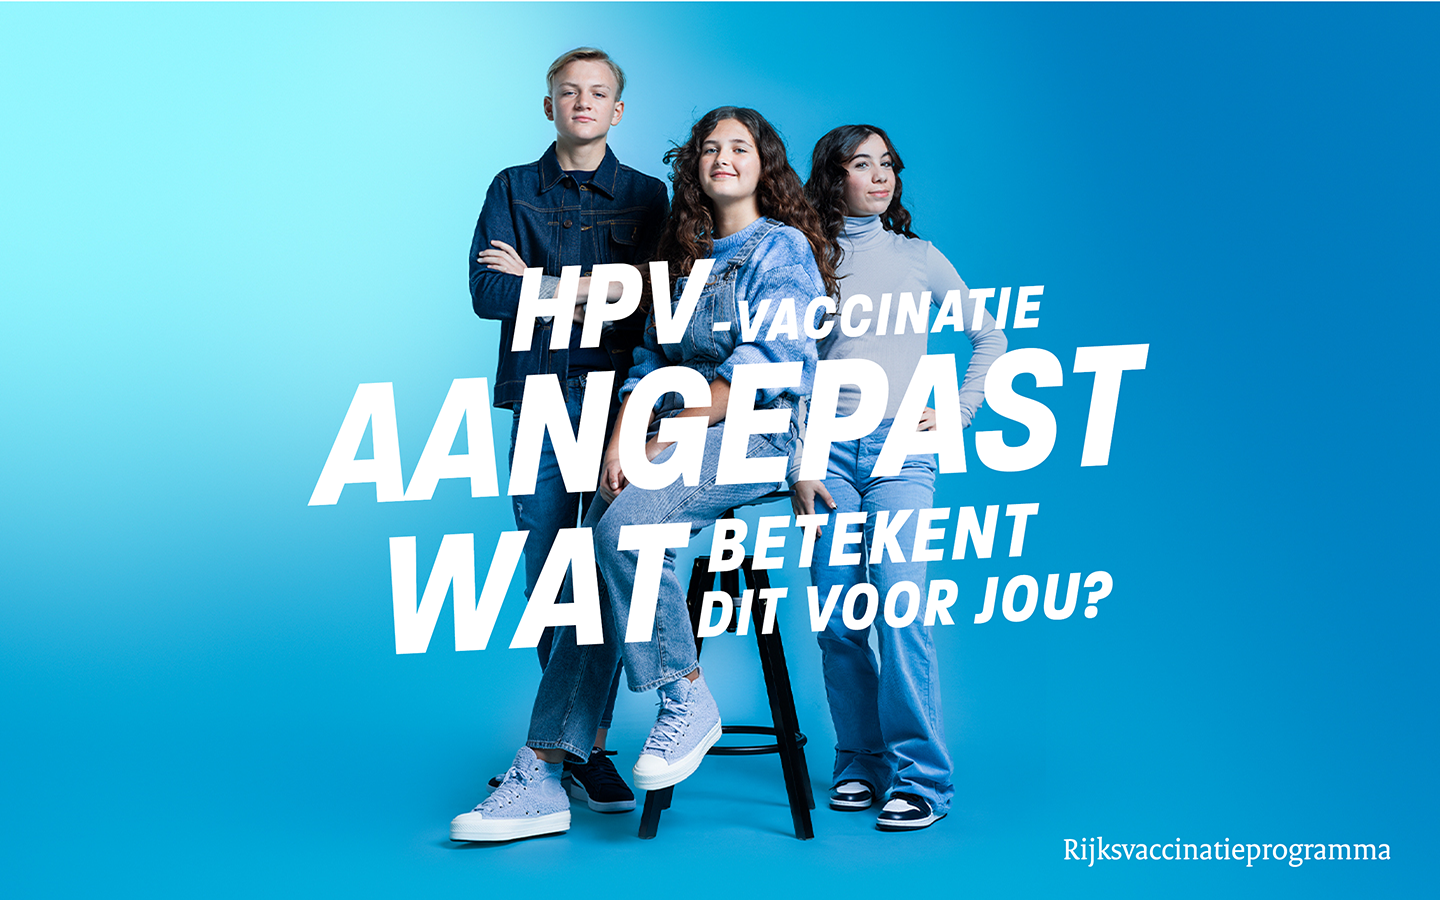 lnik naar https://rijksvaccinatieprogramma.nl/1-hpv-vaccinatie-minder-vanaf-15-jaar